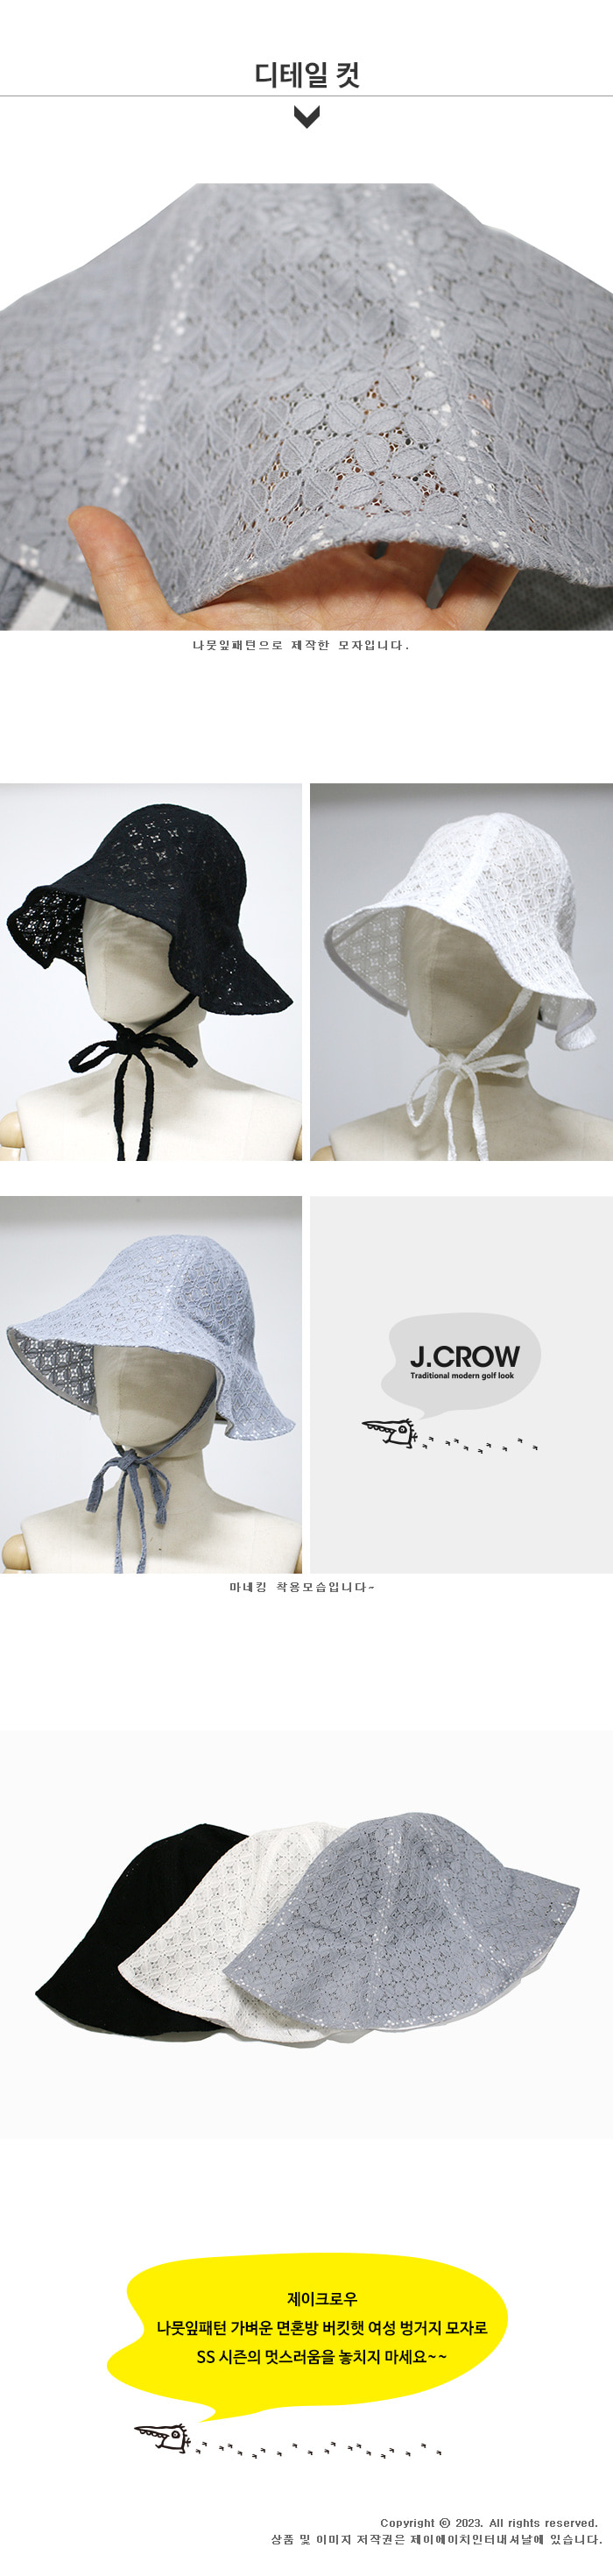 제이크로우 나뭇잎패턴 가벼운 면혼방 버킷햇 여성 벙거지 모자 (JCCS-TSP23C11) 상품디테일 상세 설명